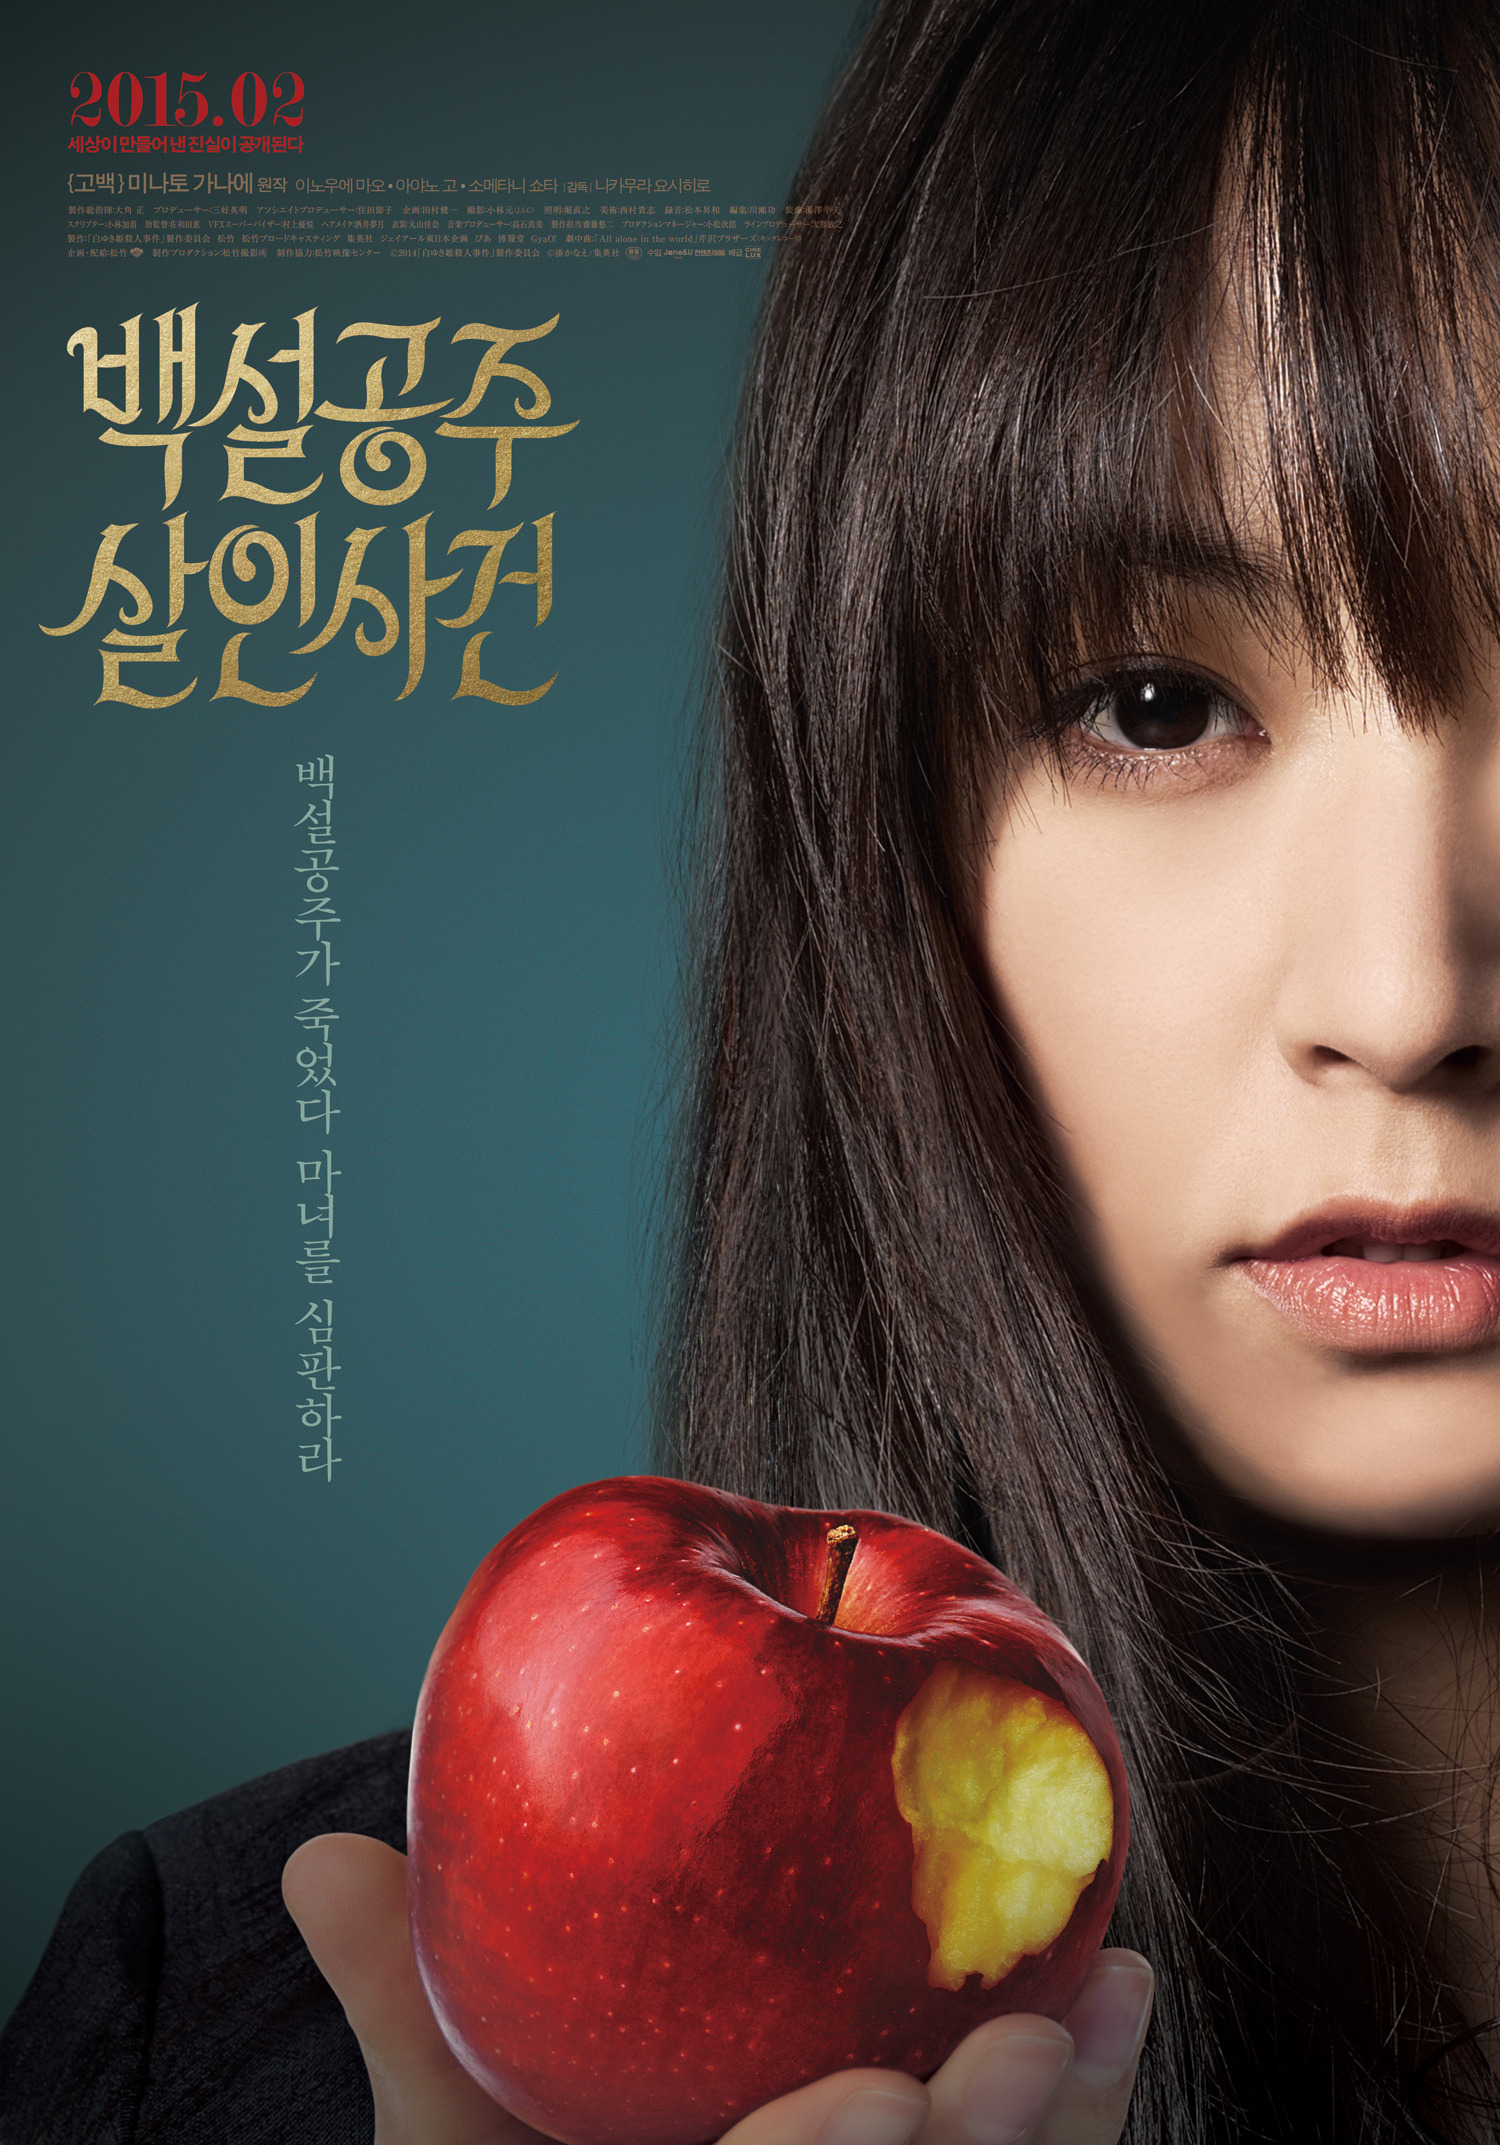 영화 백설공주 살인사건 (The Snow White Murder Case, 白ゆき姫殺人事件, 2014) 공식 포스터